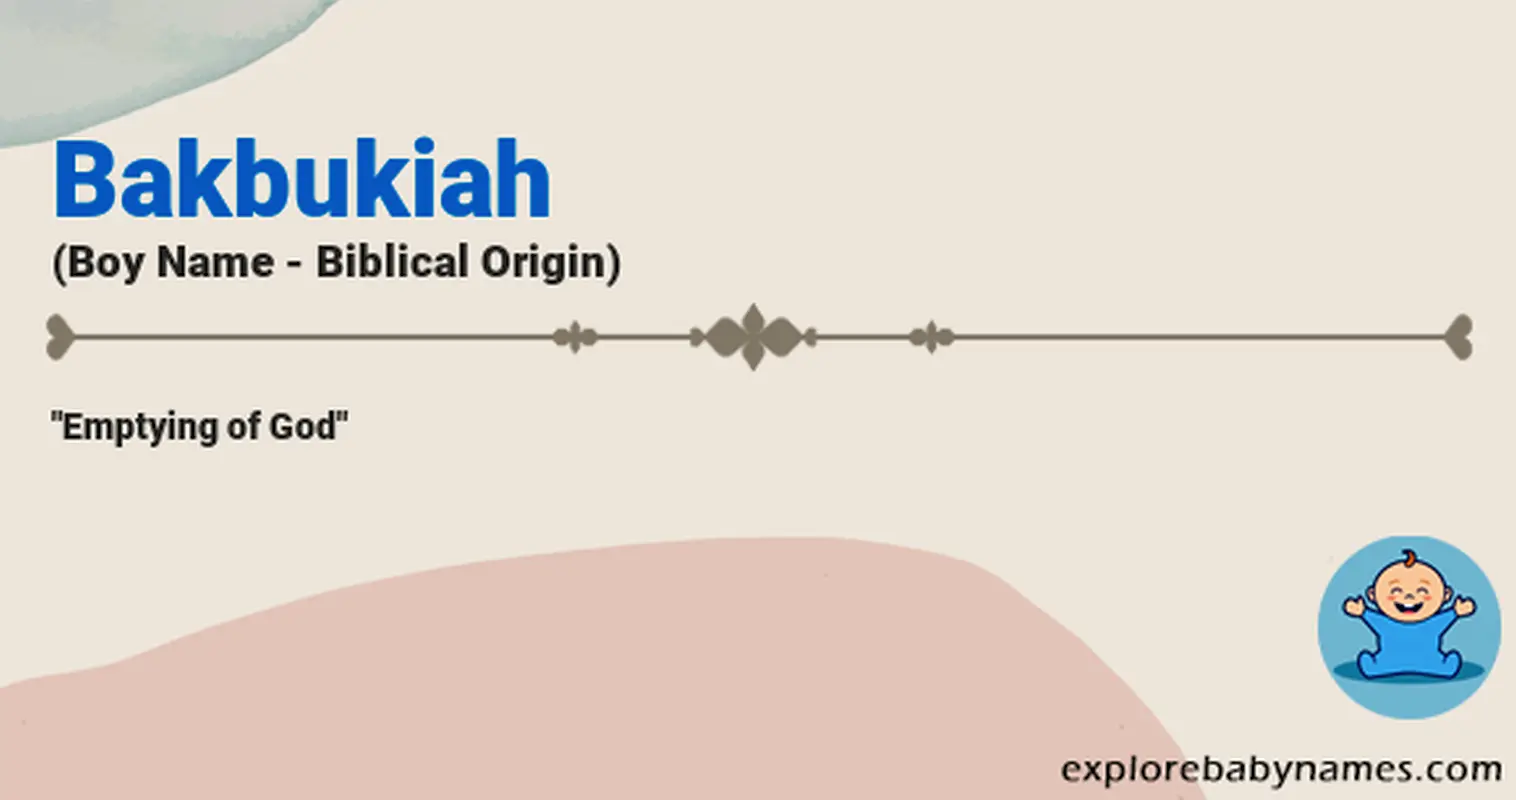 Meaning of Bakbukiah